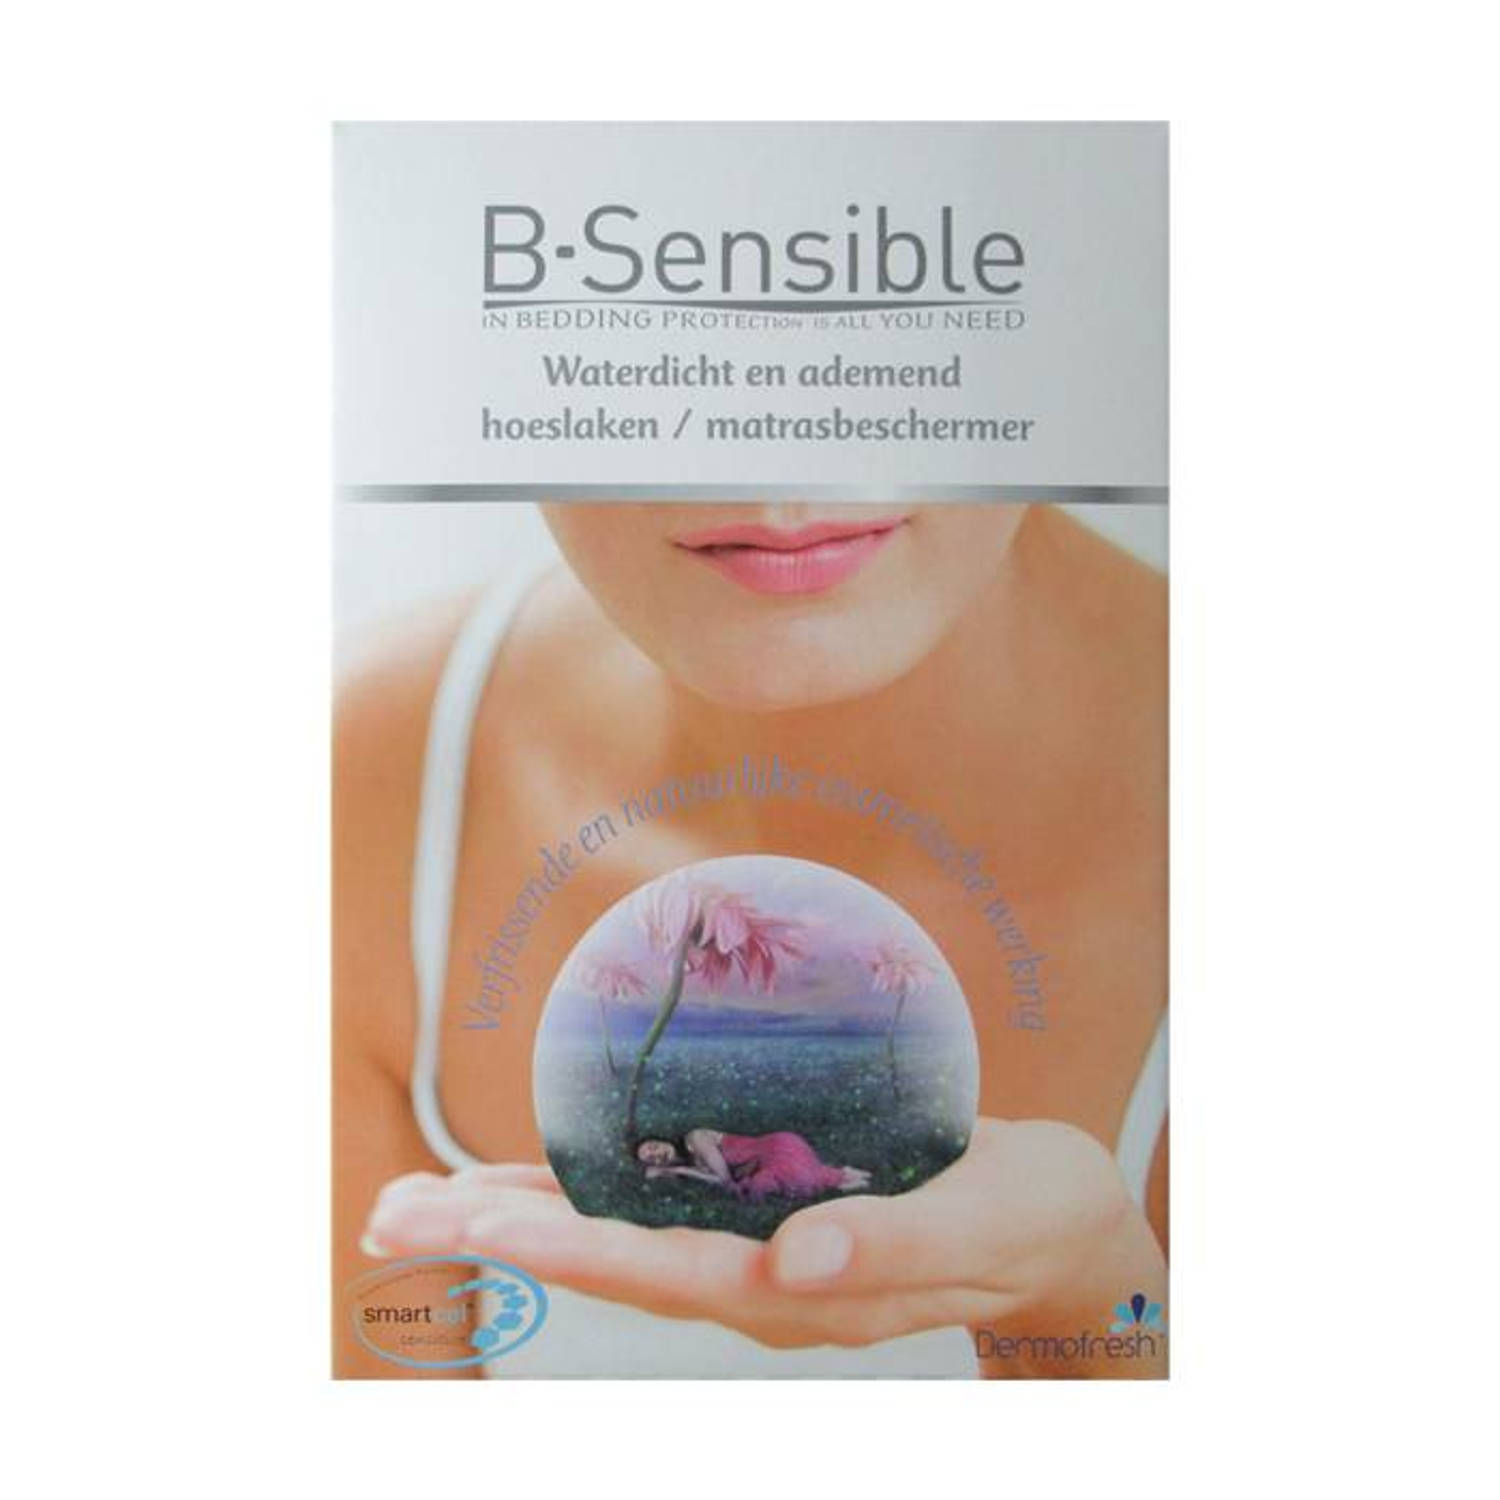 B-Sensible 2 in 1 waterdicht & ademend hoeslaken + matrasbeschermer - Wit - 70x200